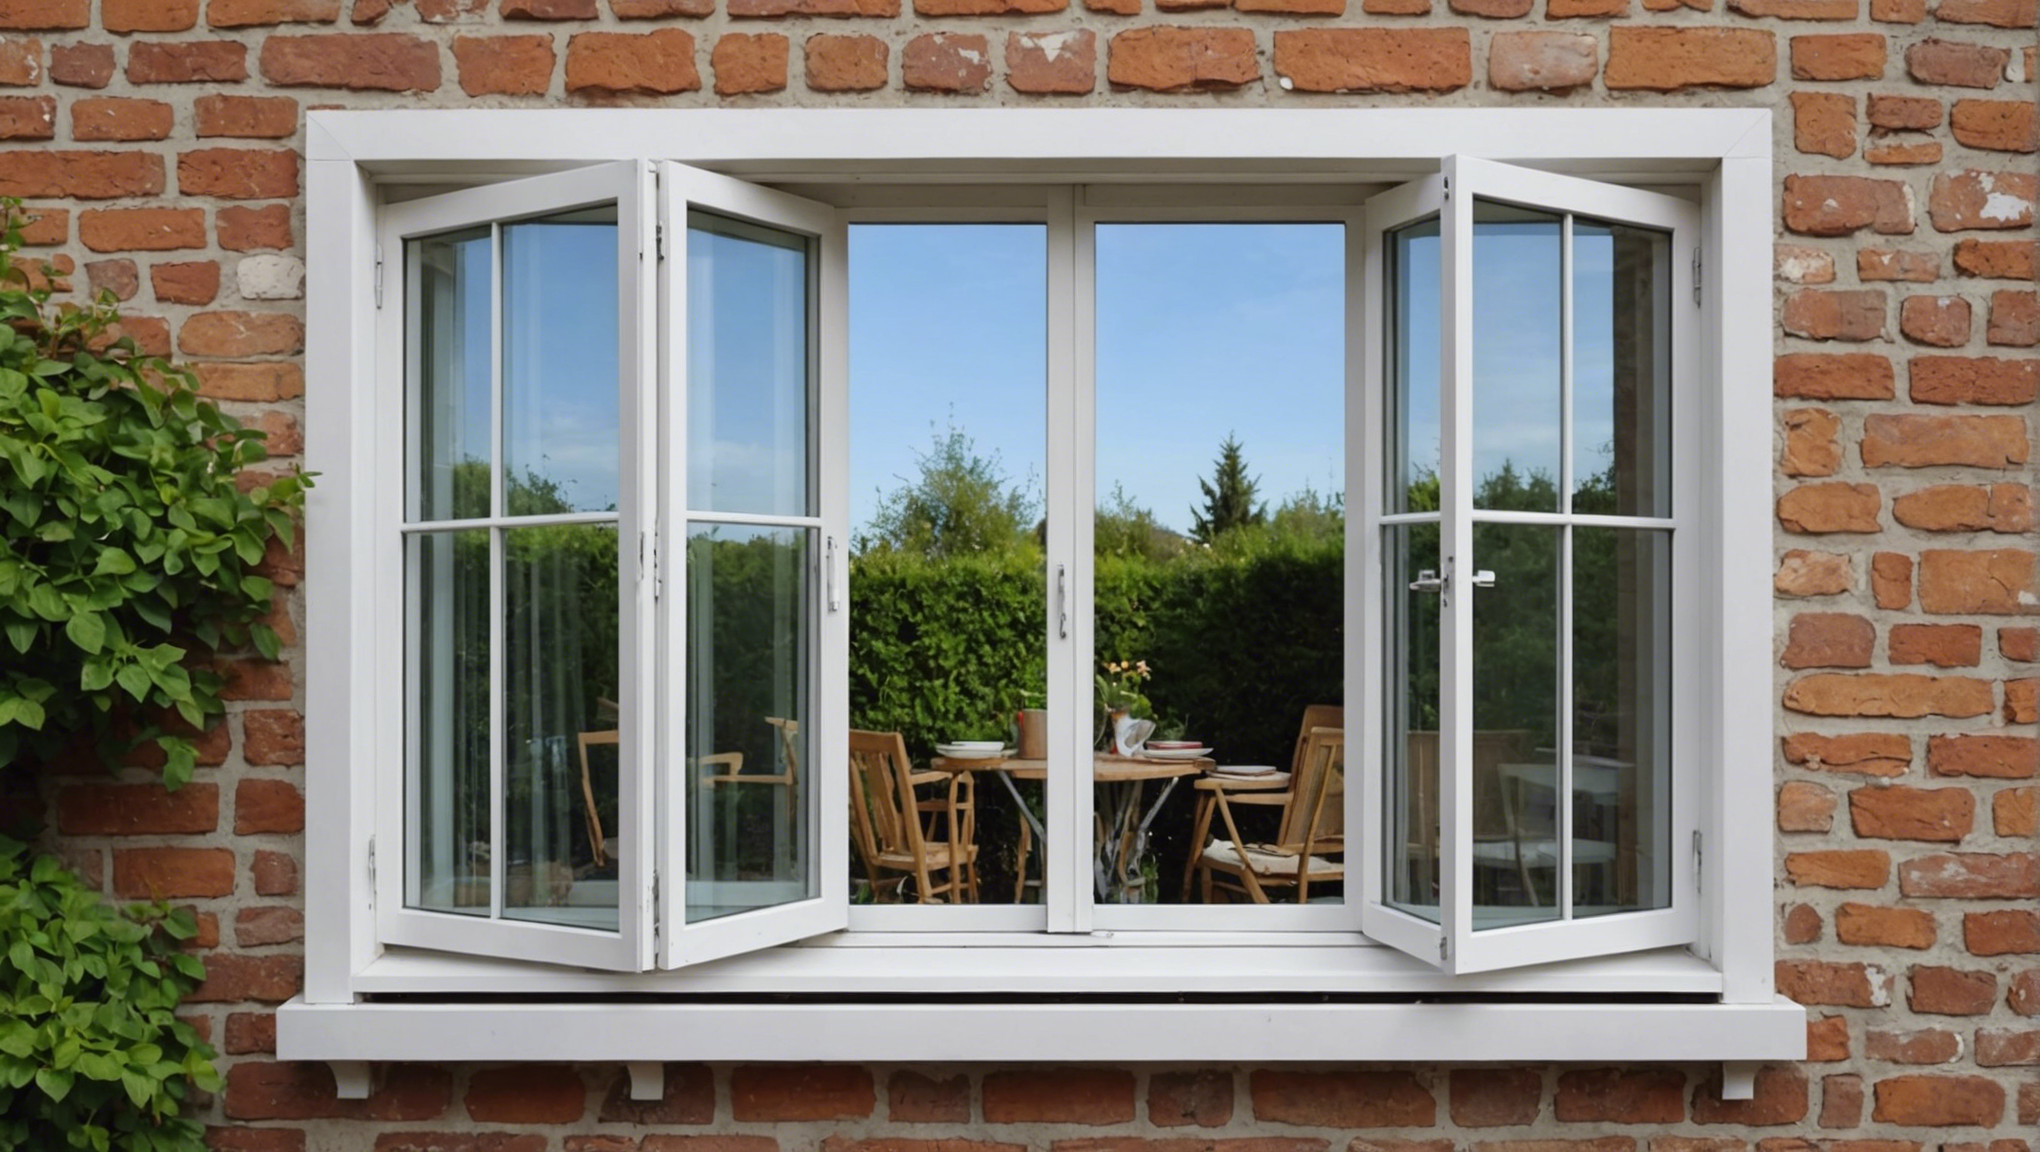 découvrez les avantages des fenêtres oscillo-battantes pour votre maison et comment elles peuvent améliorer votre confort au quotidien.